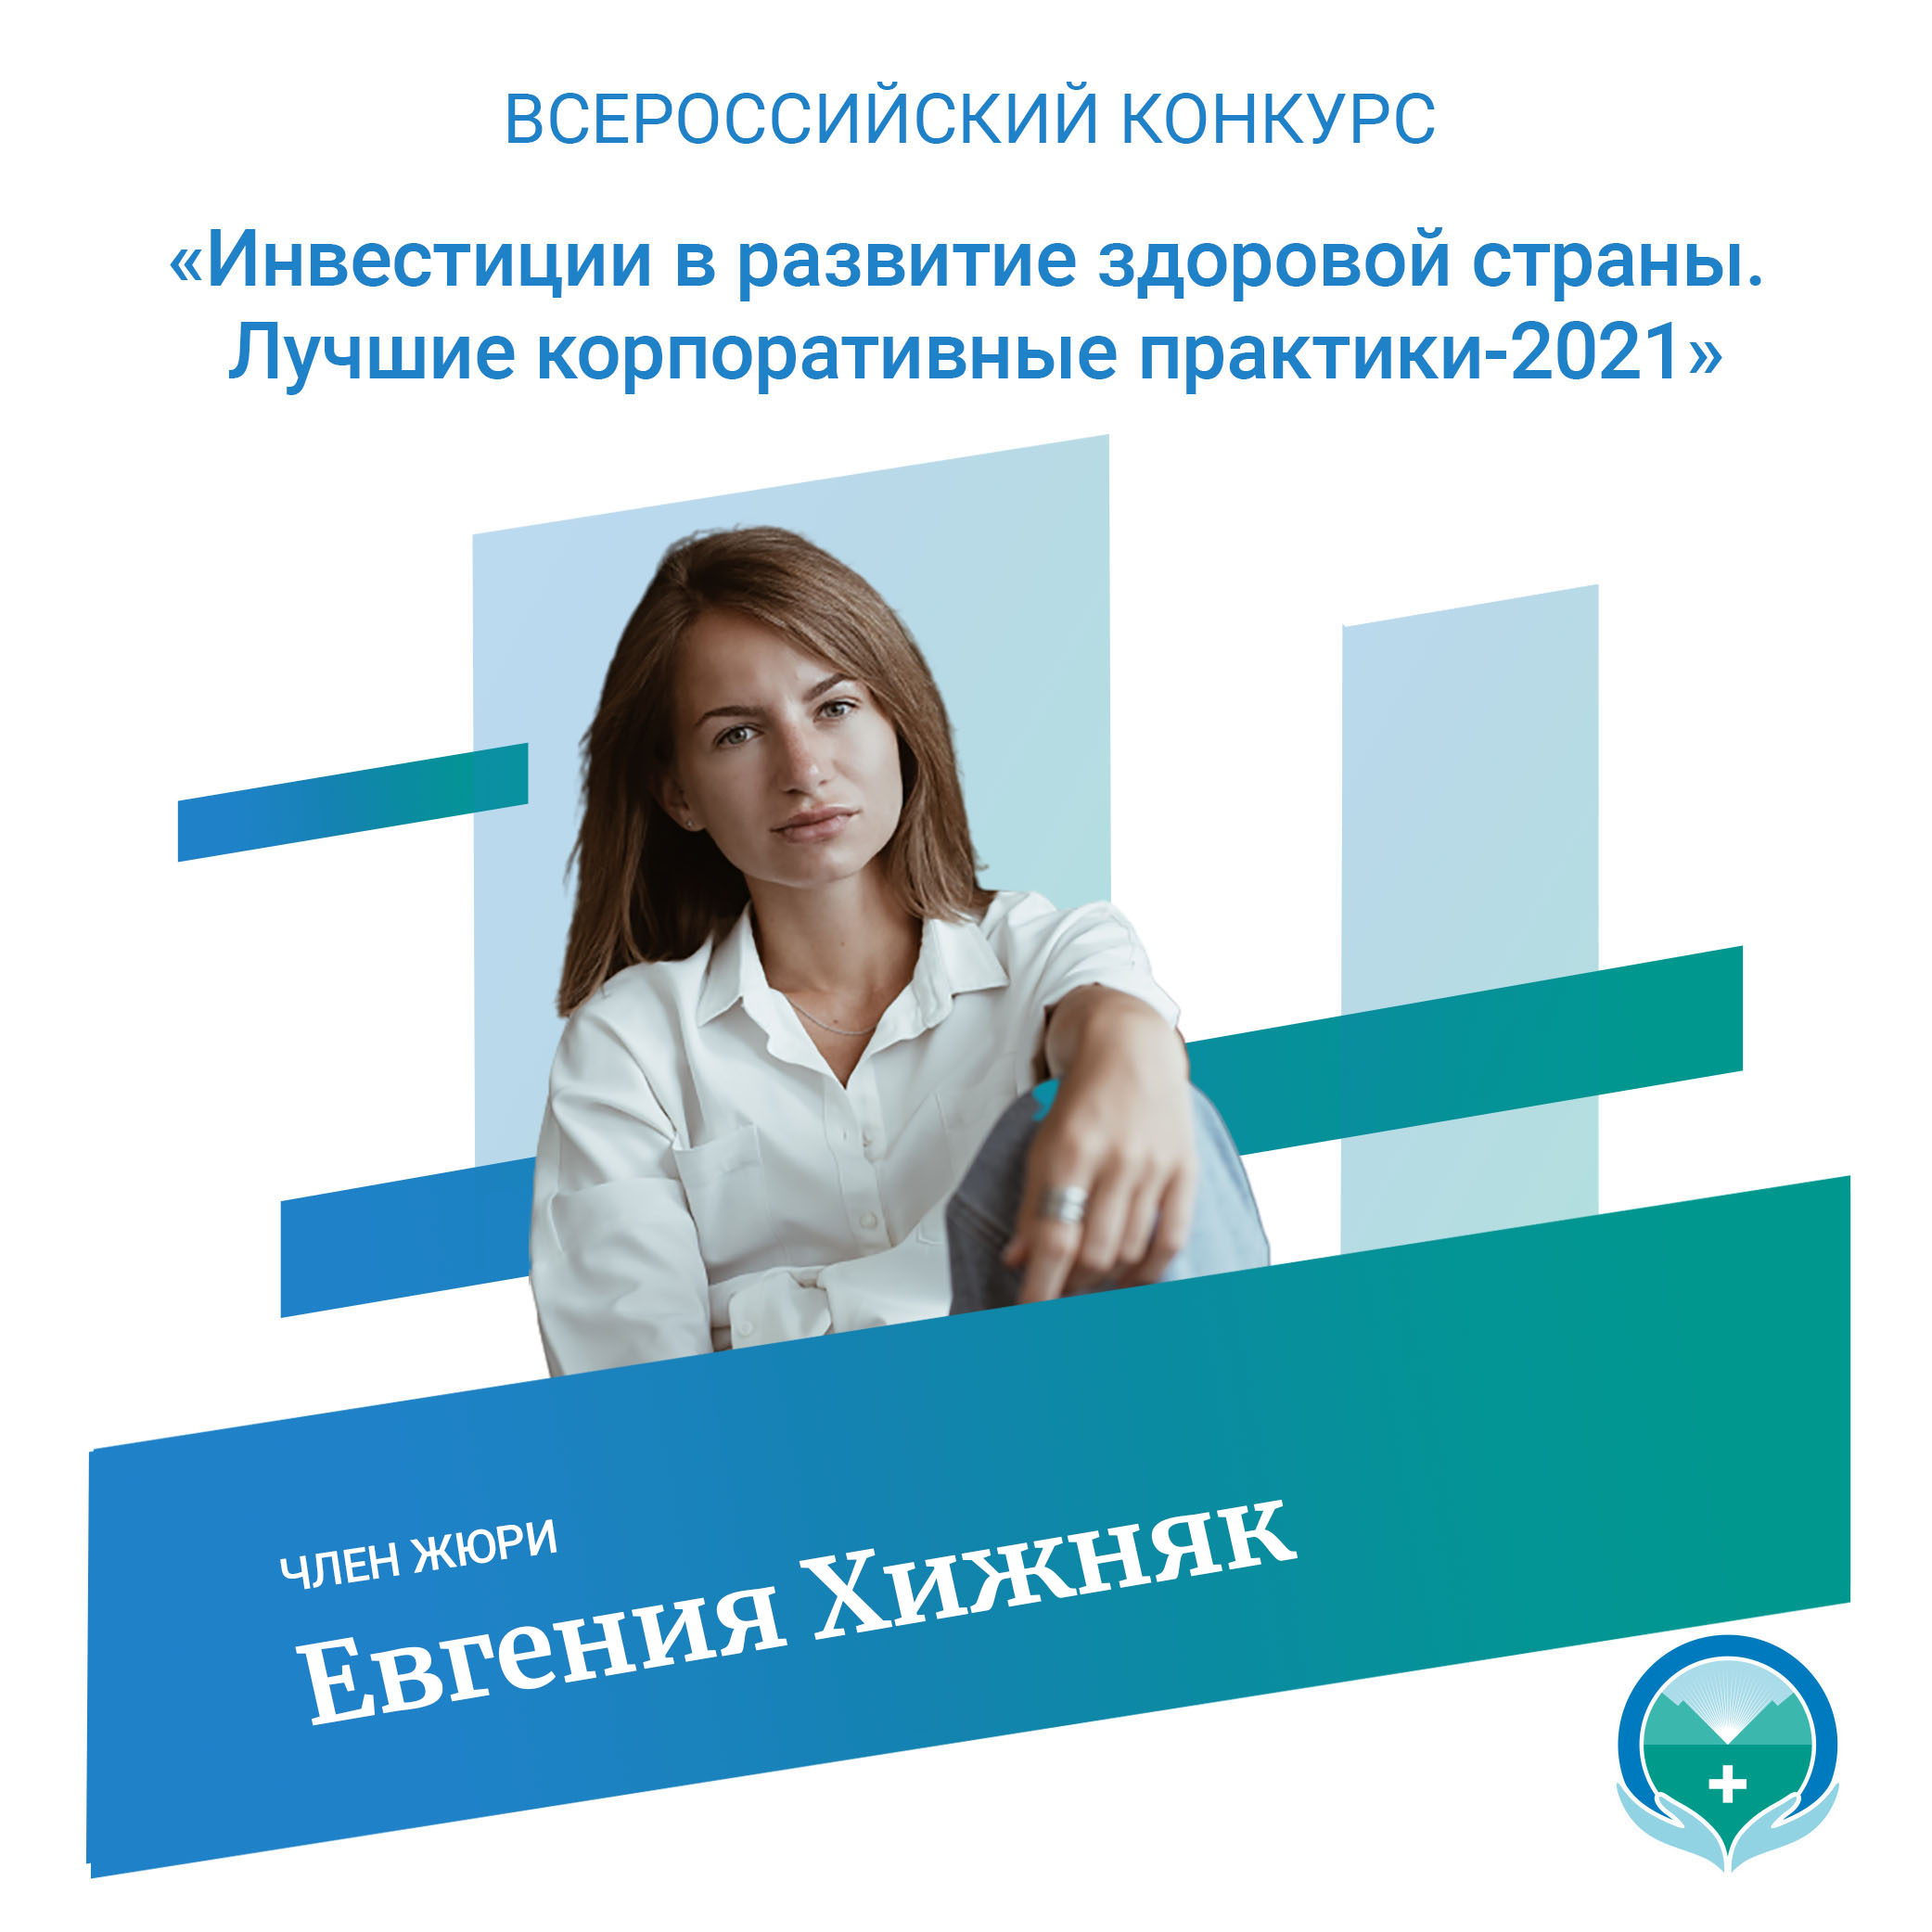 Евгения Хижняк - член жюри Всероссийского конкурса «Инвестиции в развитие здоровой страны. Лучшие корпоративные практики-2021»